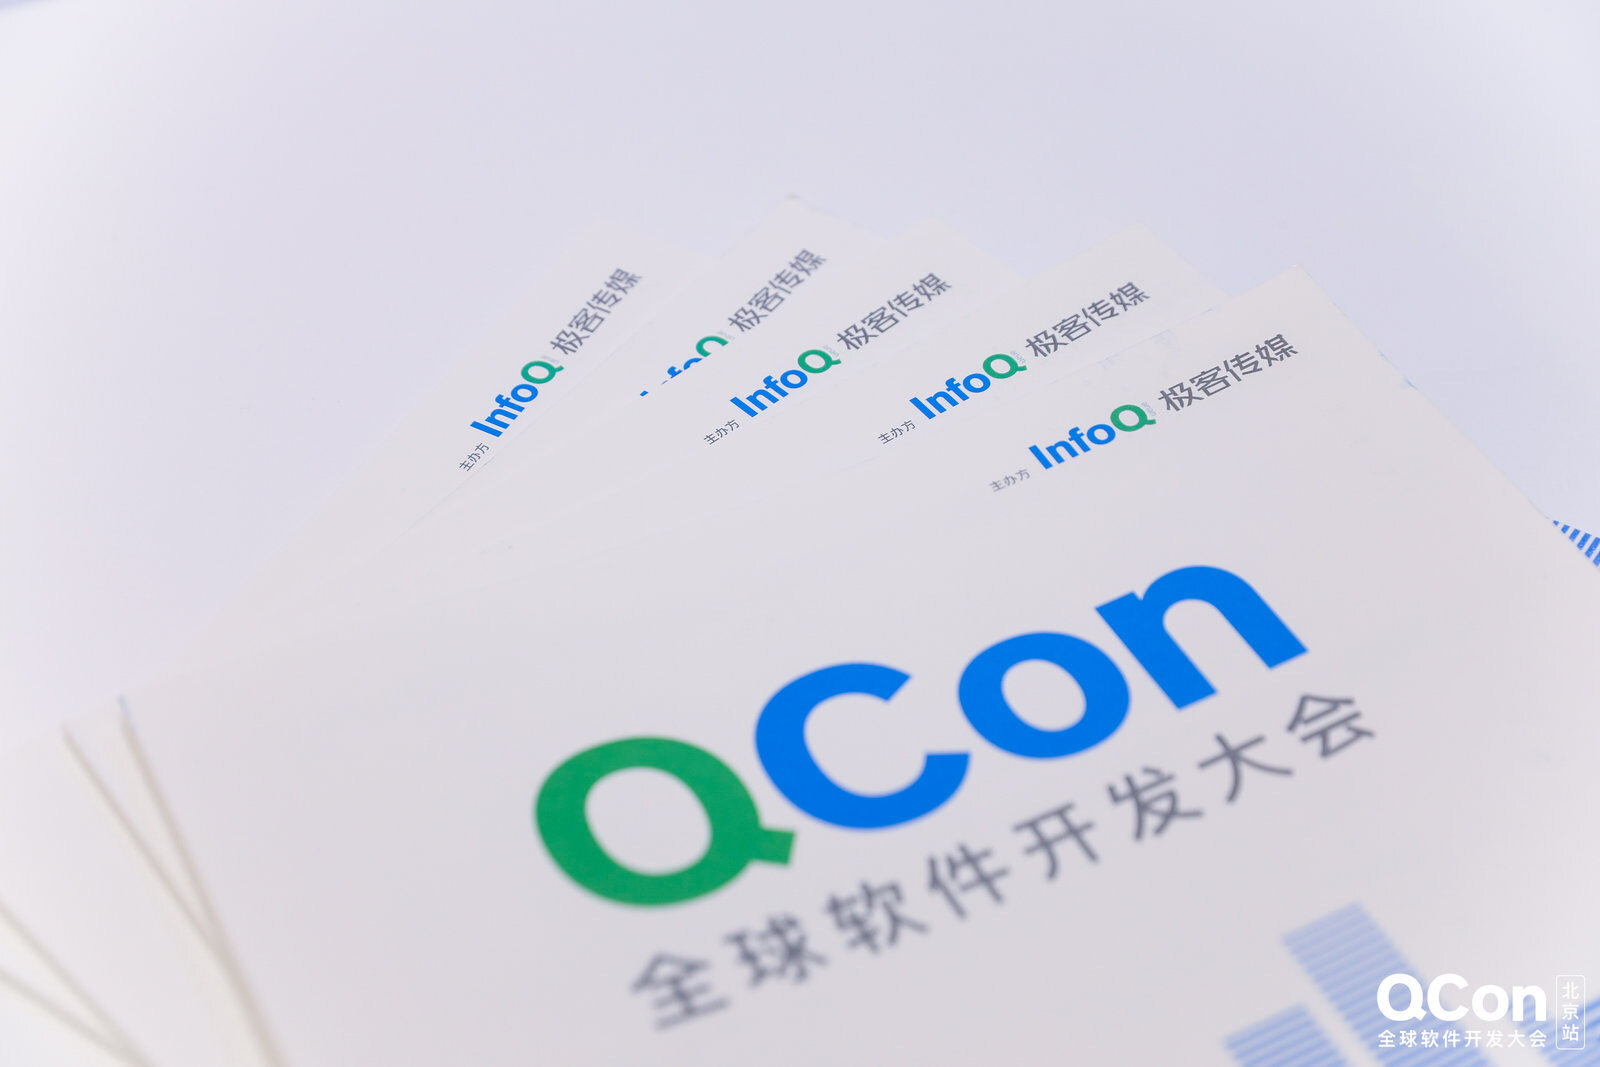 百度智能云技术委员会主席王耀确认担任QCon联席主席并将发表主题演讲